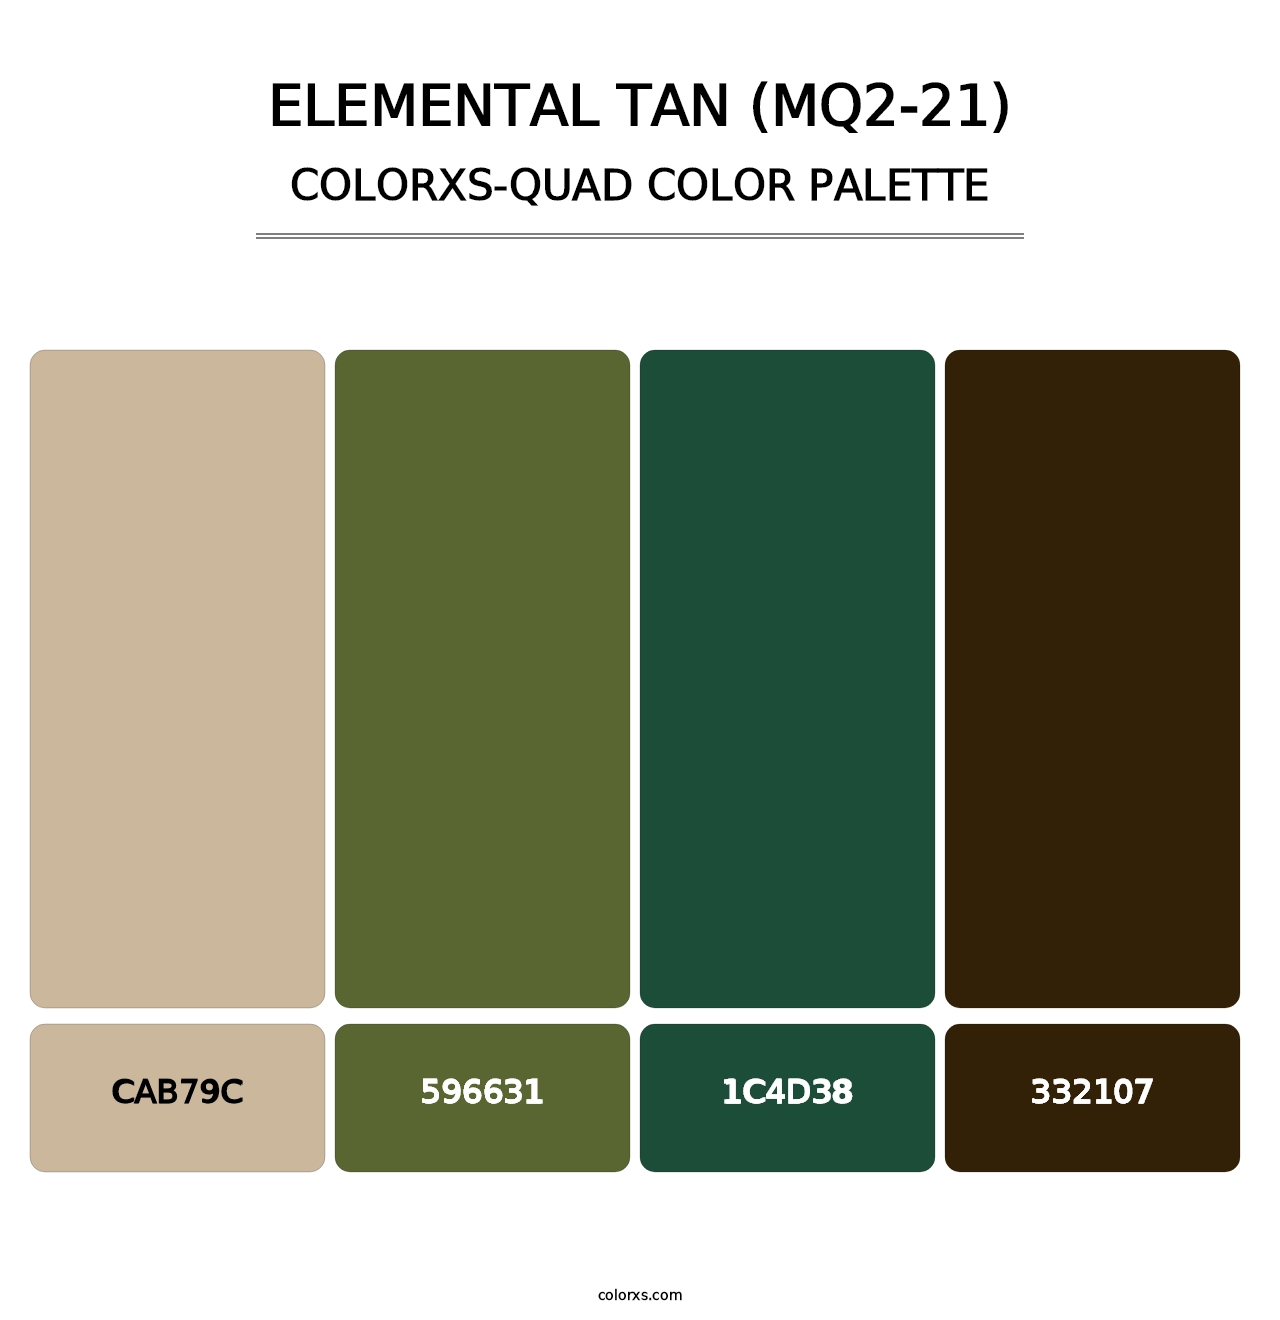 Elemental Tan (MQ2-21) - Colorxs Quad Palette